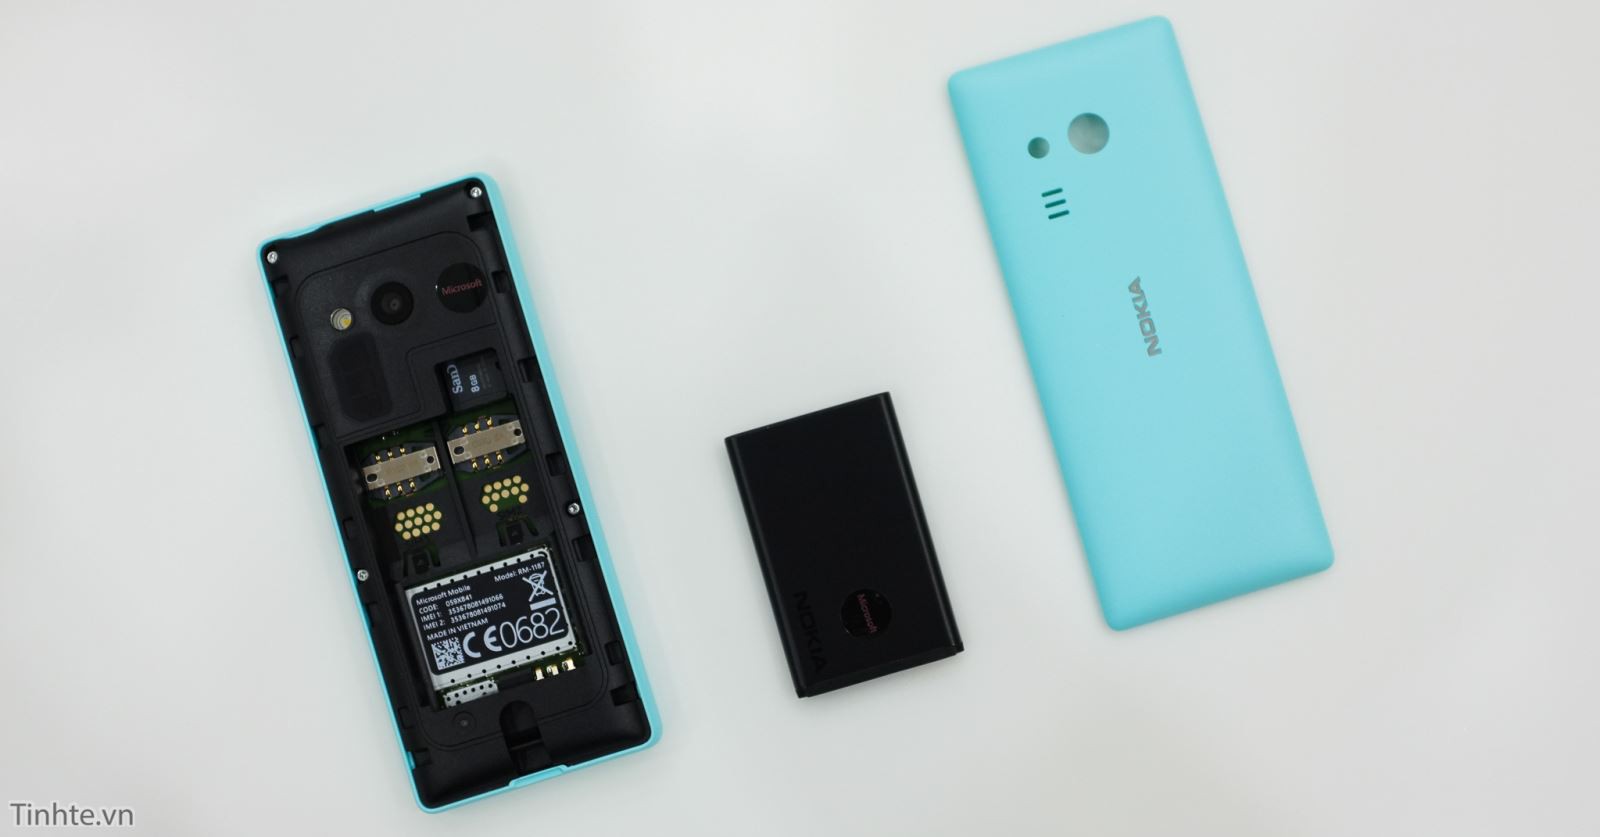 Cận cảnh chiếc Nokia 216 phiên bản màu xanh tuyệt đẹp 5